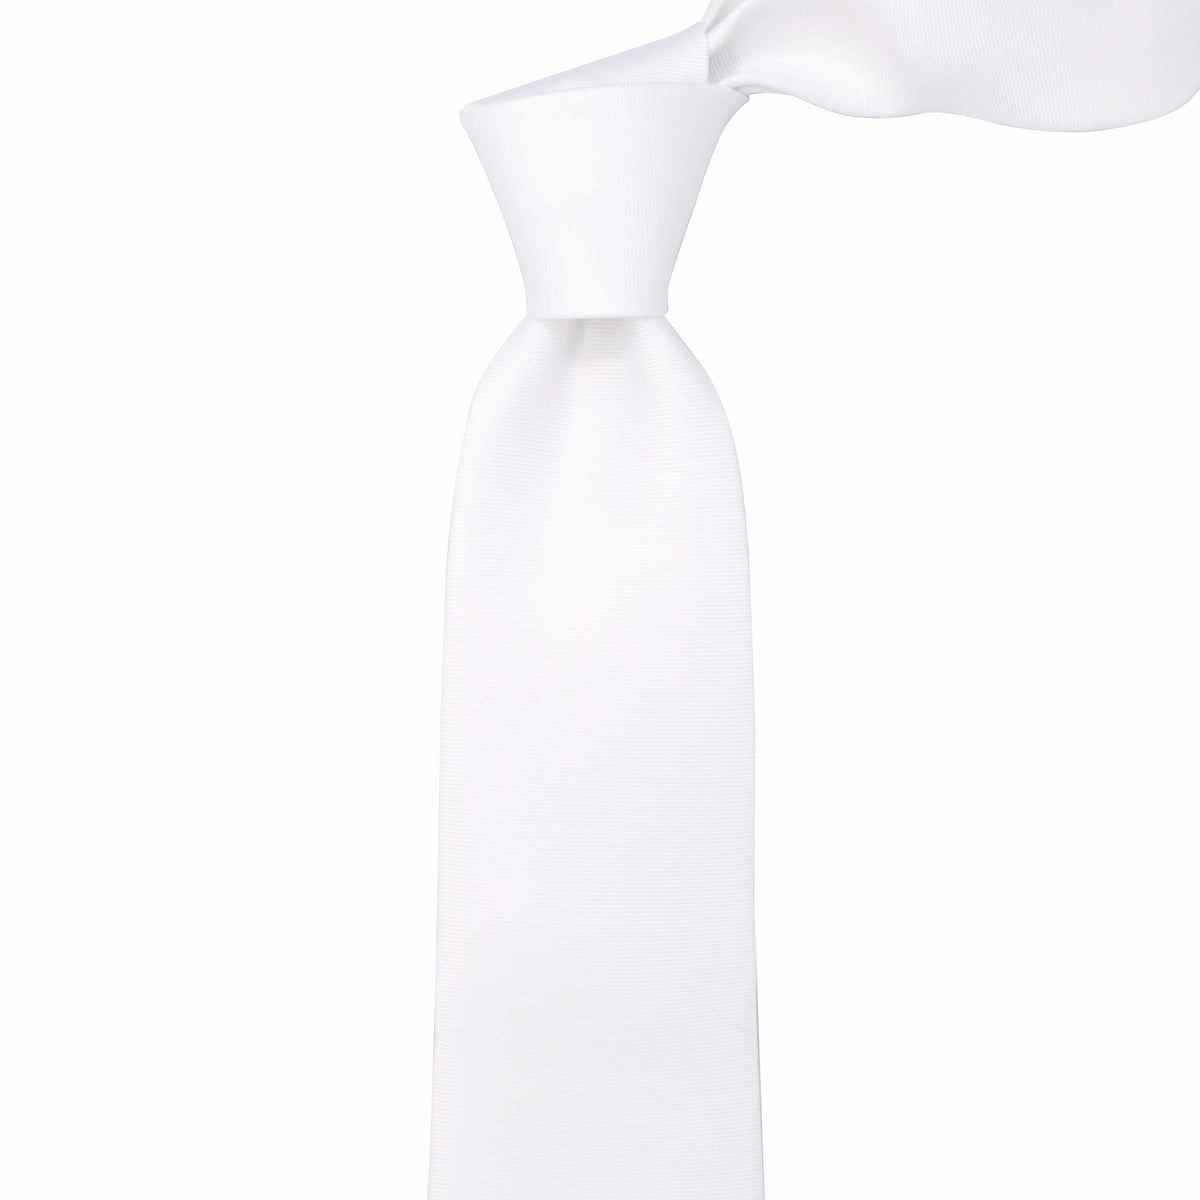 White Necktie with Horizontal Stripe - 8cm-Neckties-MarZthomson-Cufflinks.com.sg